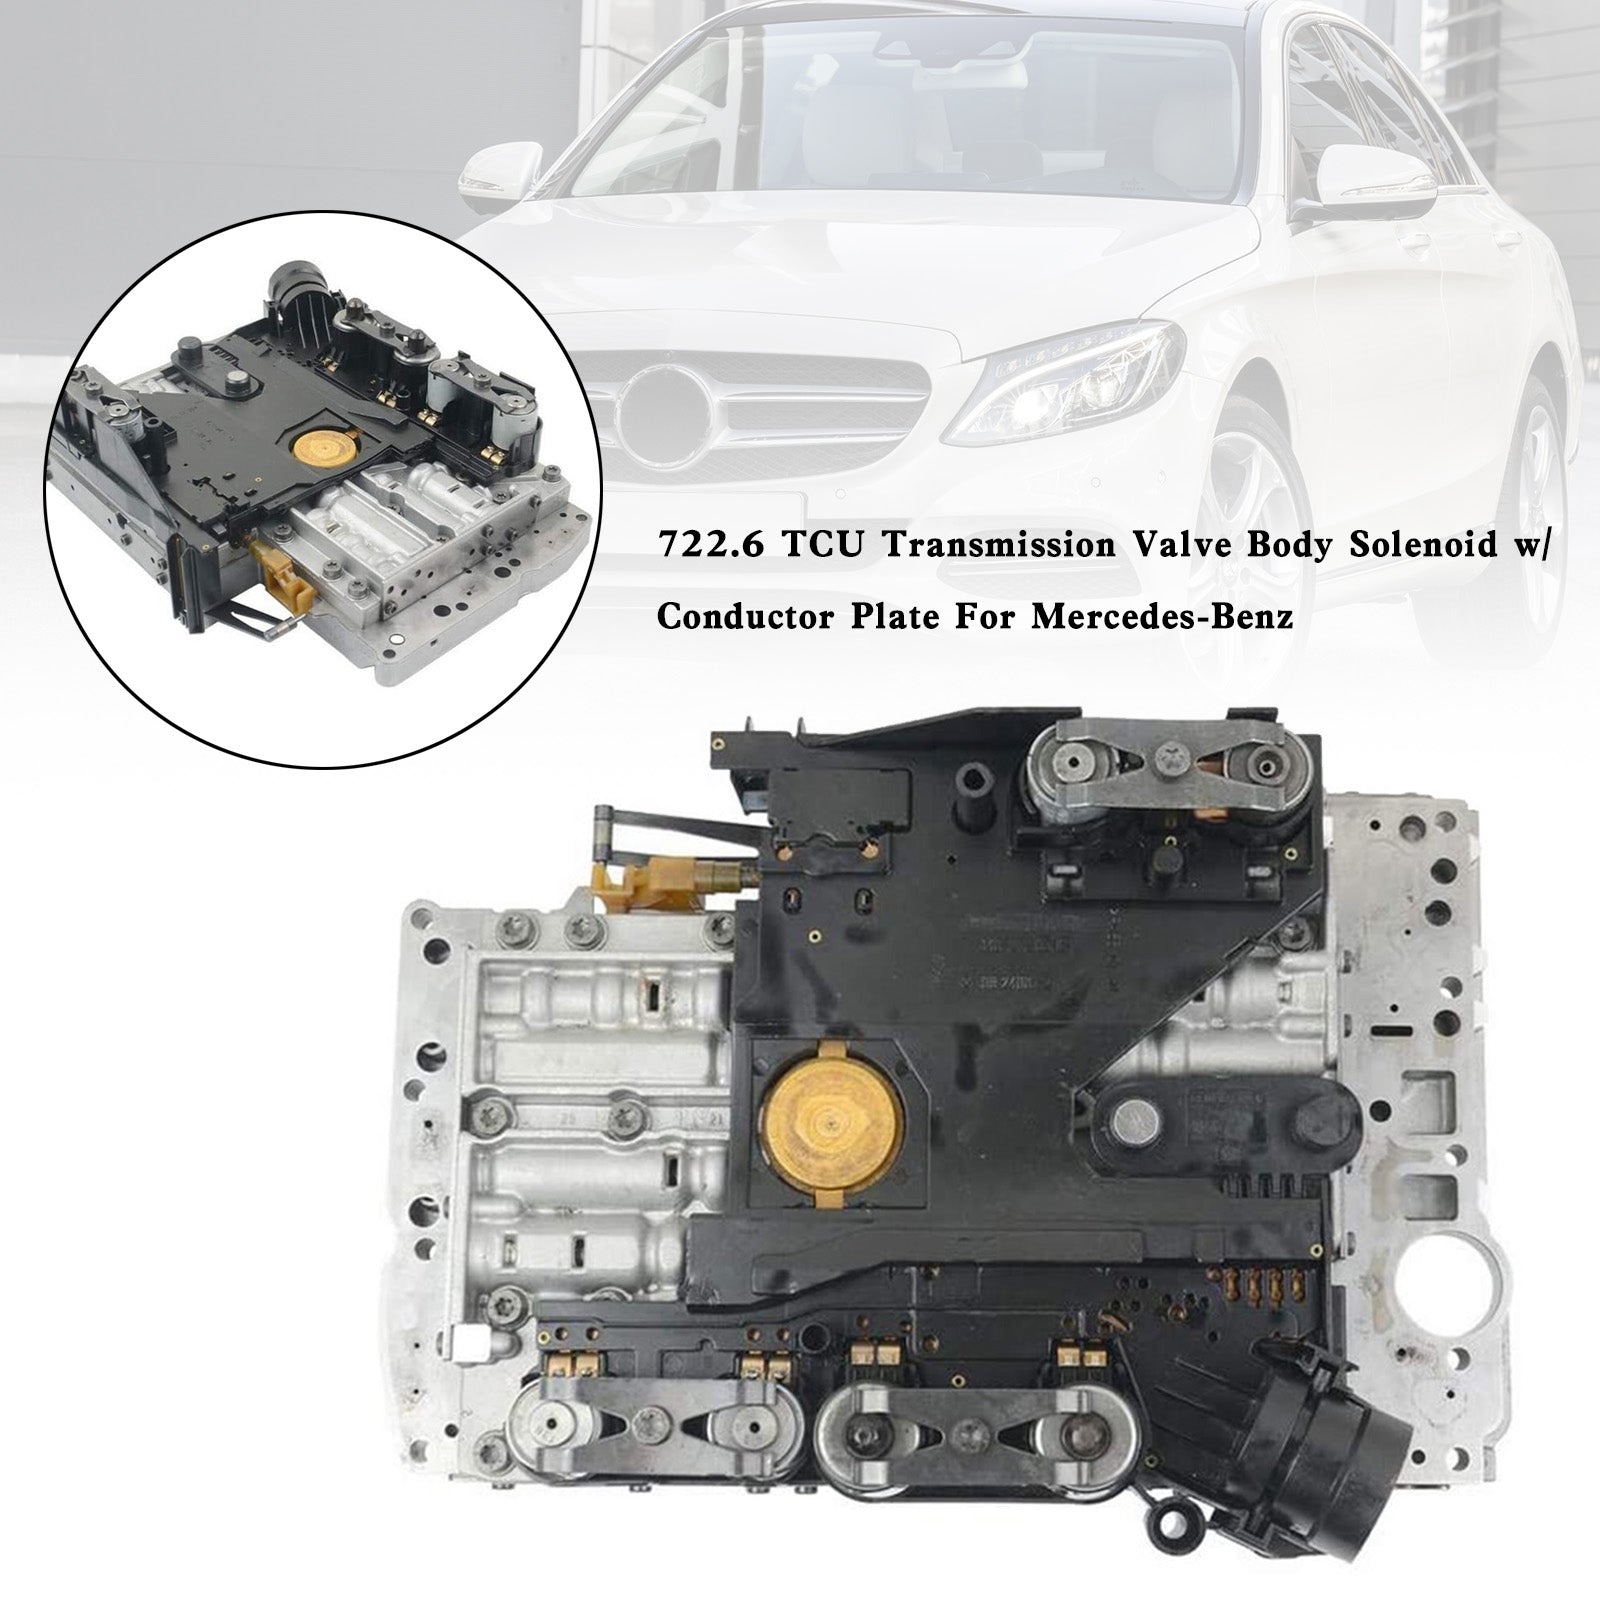 Sprinter 2500 2010-2012 722.6 TCU Solenoide del cuerpo de la válvula de transmisión con placa conductora Mercedes-Benz